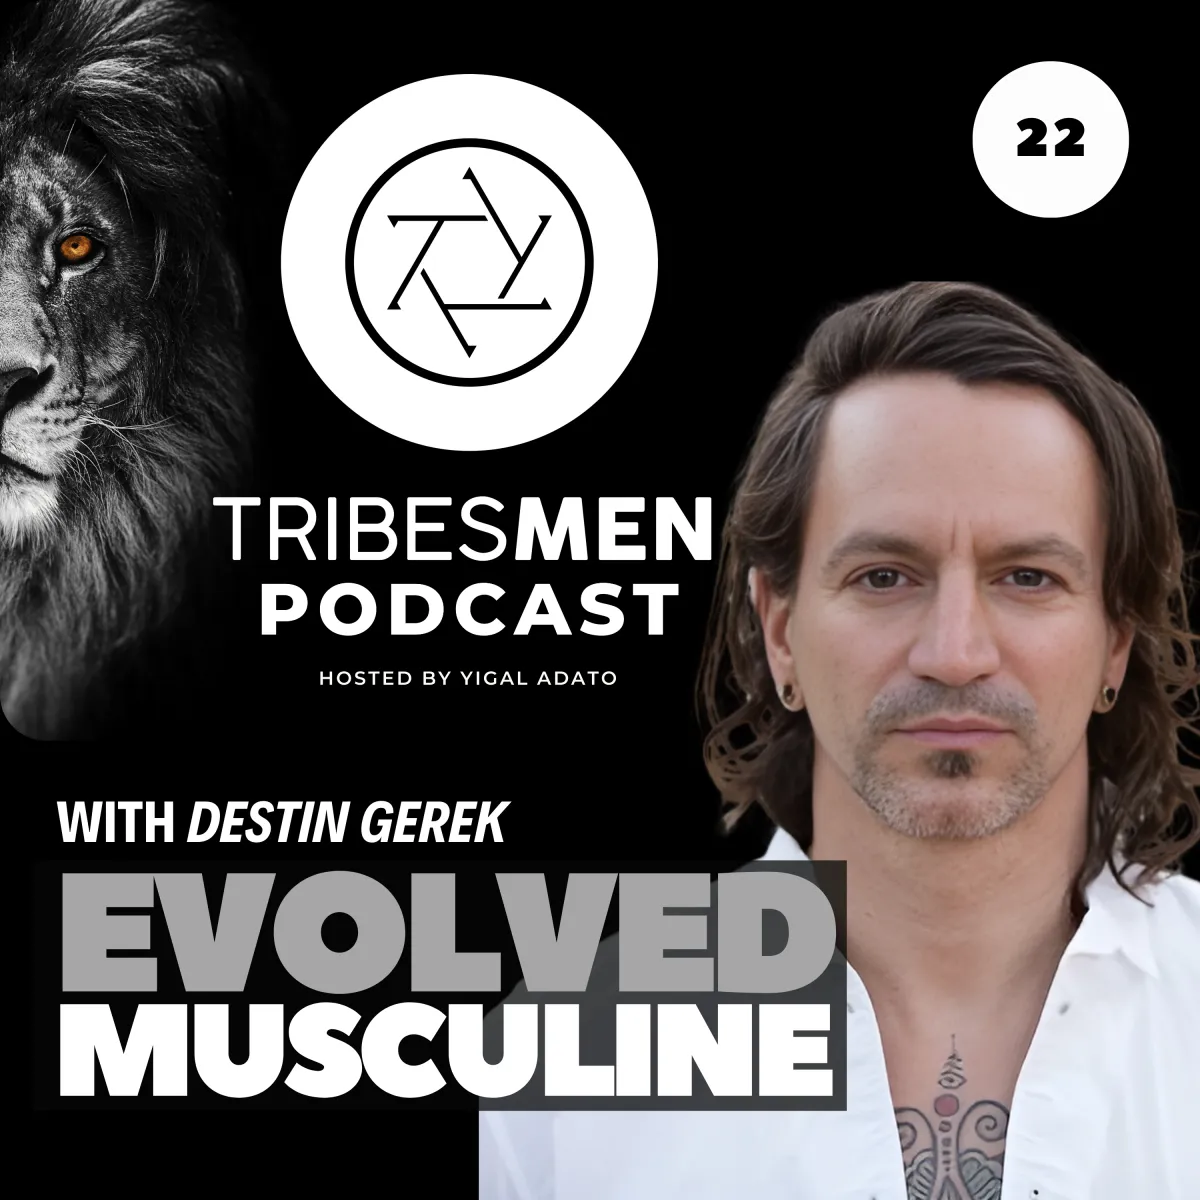 Tribesmen Podcast Episode 22 with Destin Gerek